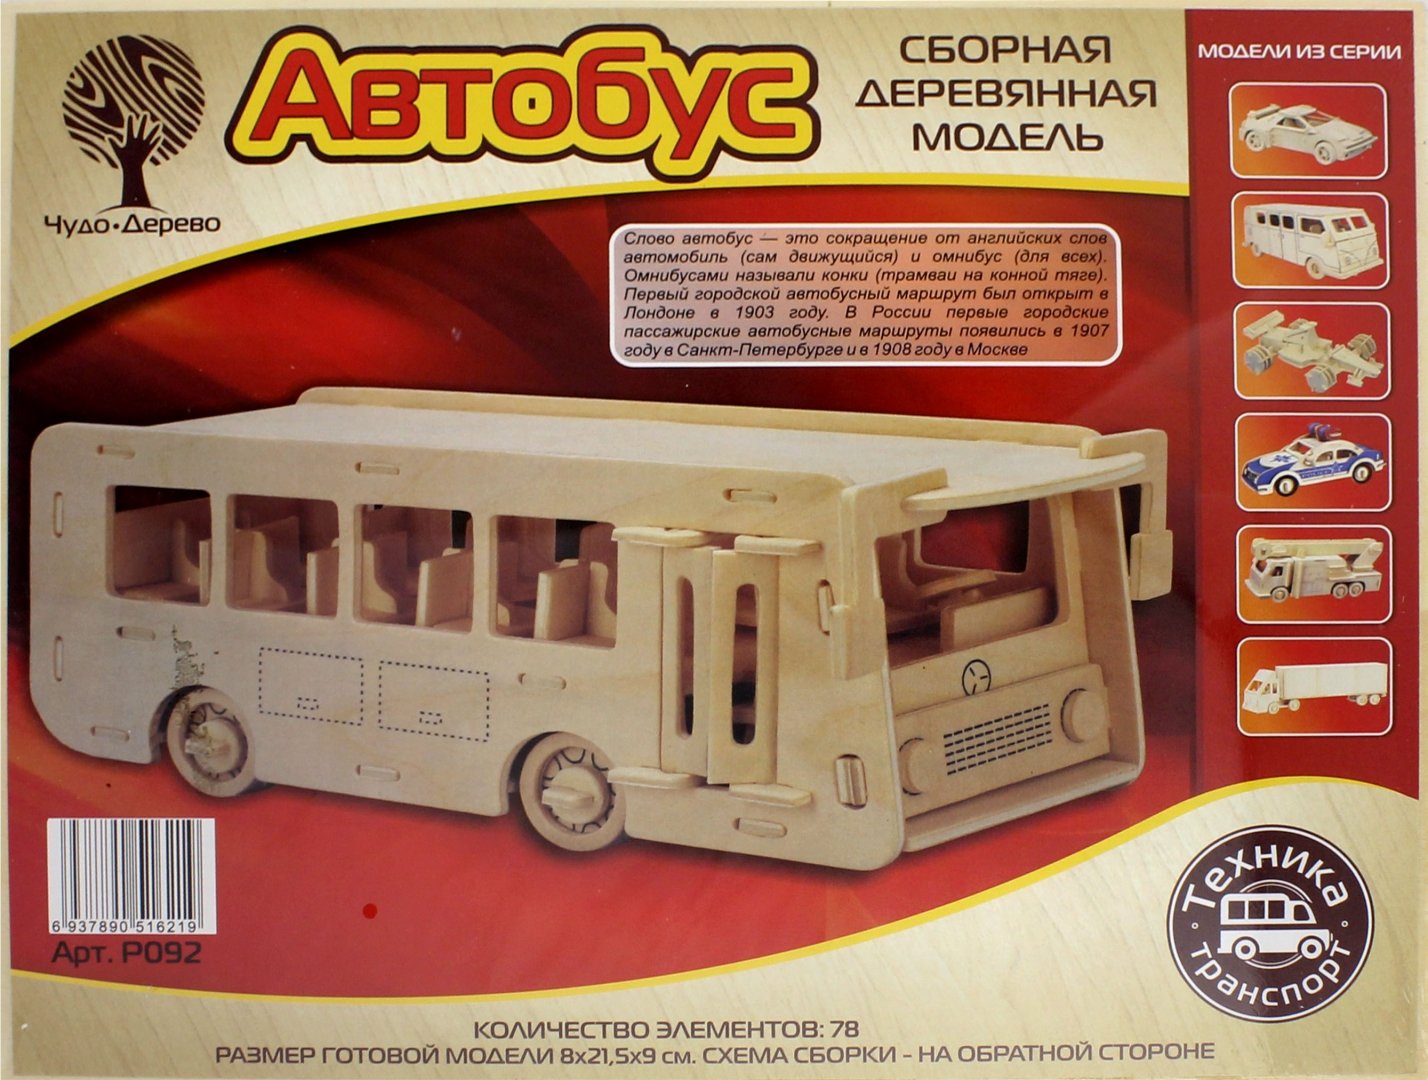 Иллюстрация 1 из 3 для Модель сборная деревянная Автобус | Лабиринт - игрушки. Источник: Лабиринт